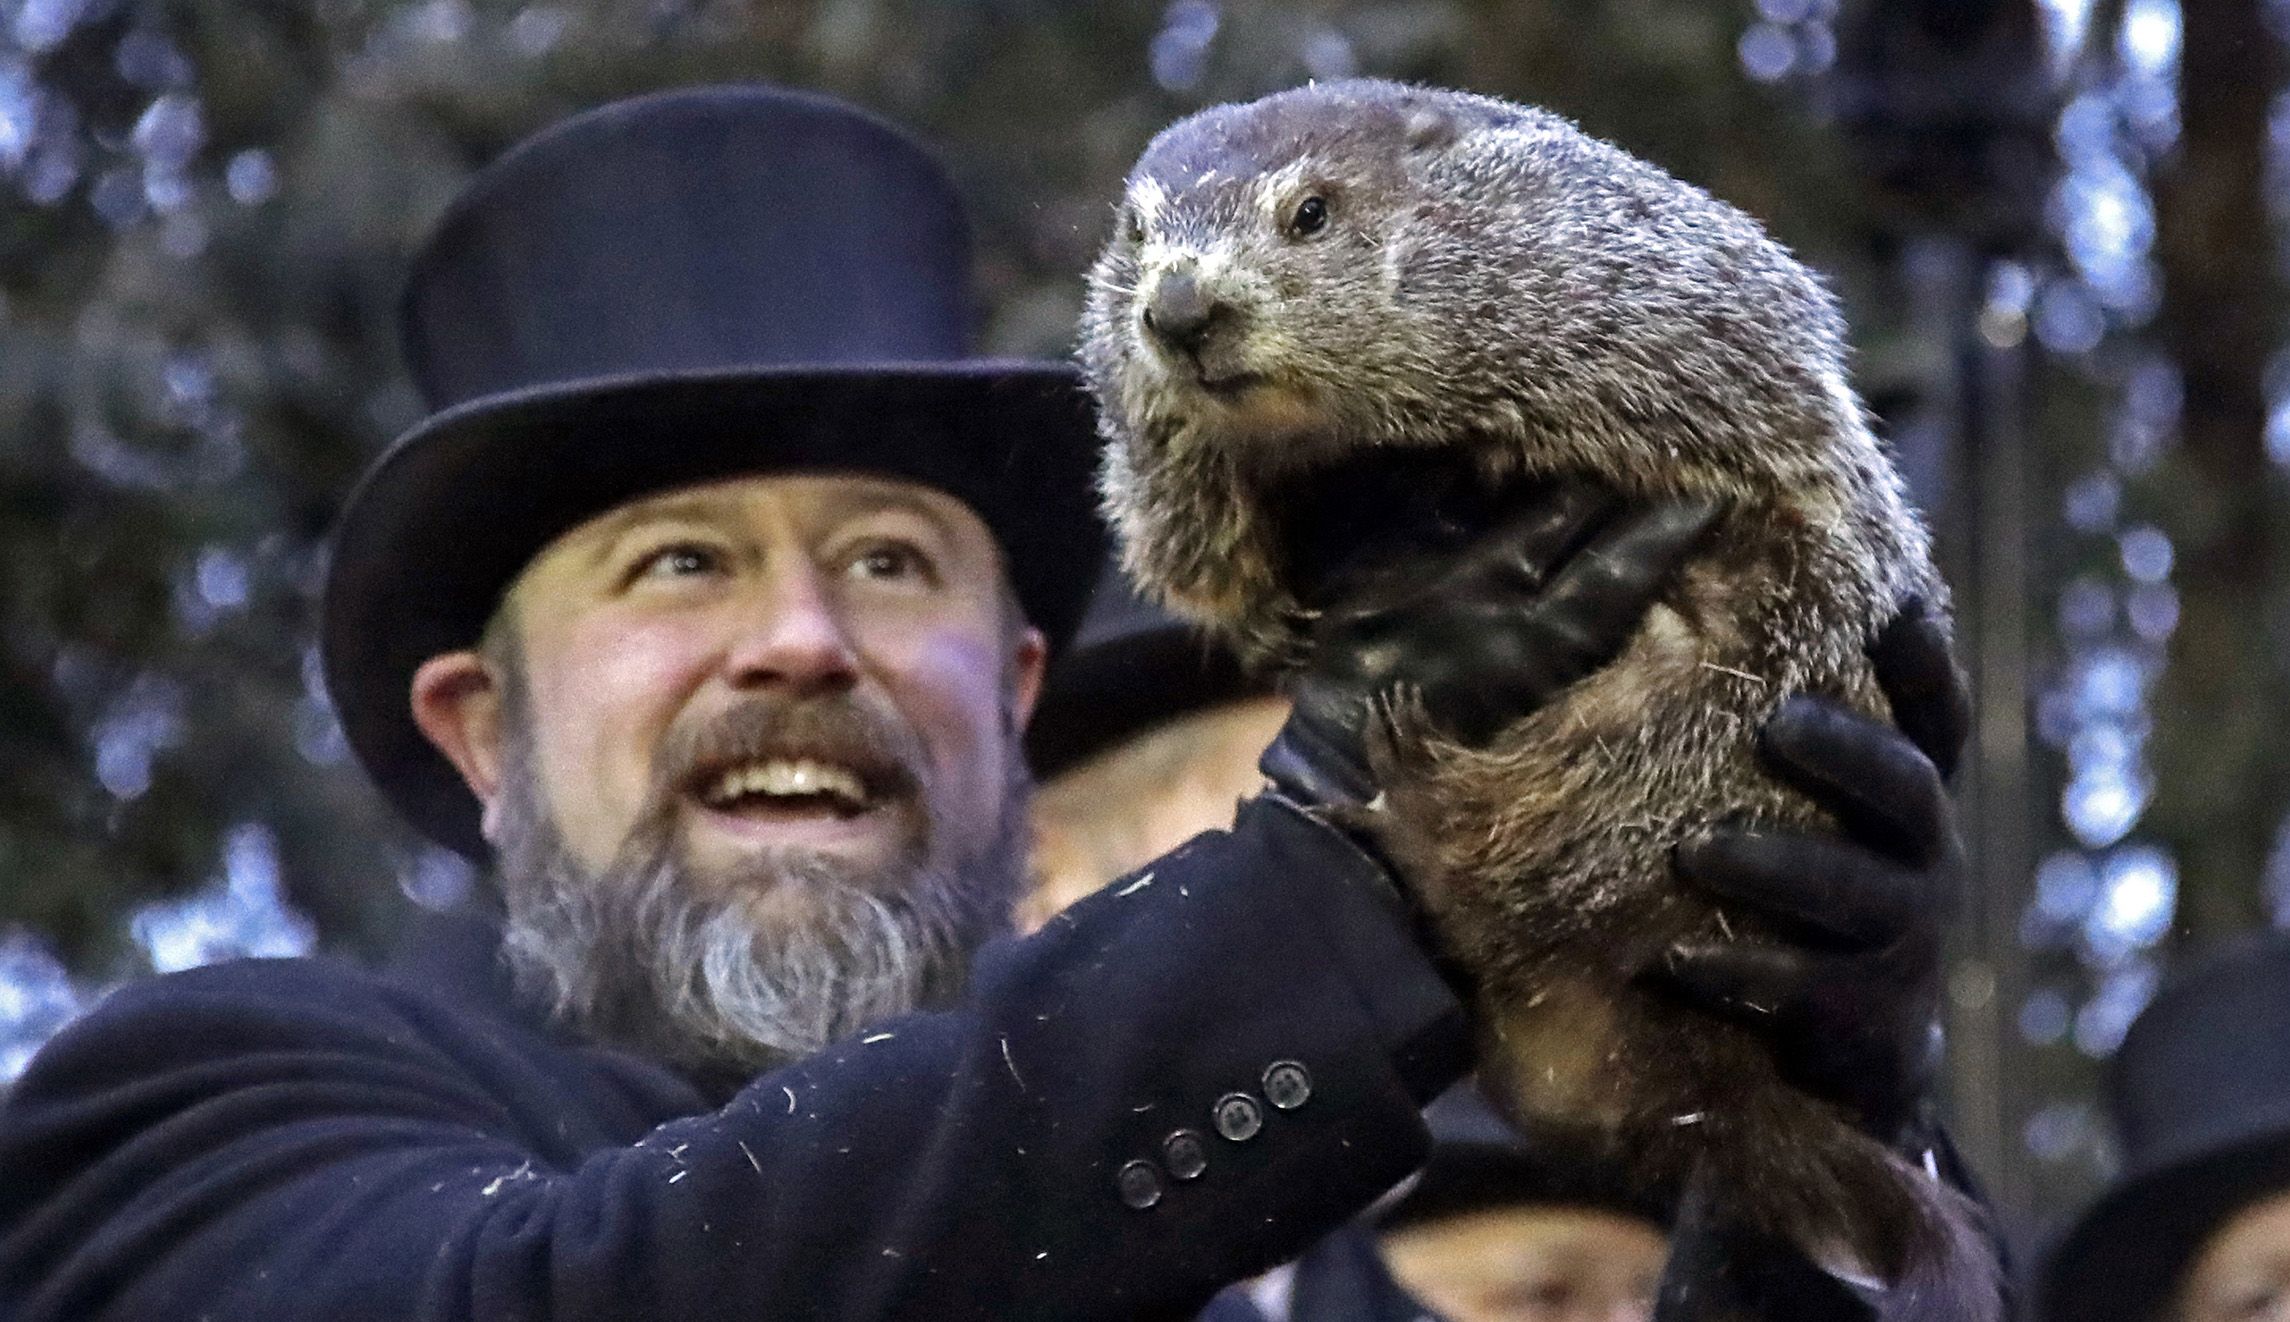 Groundhog Club co-handler Al Dereume holds Punxsutawney Phil, the weather prognosticating groundhog.